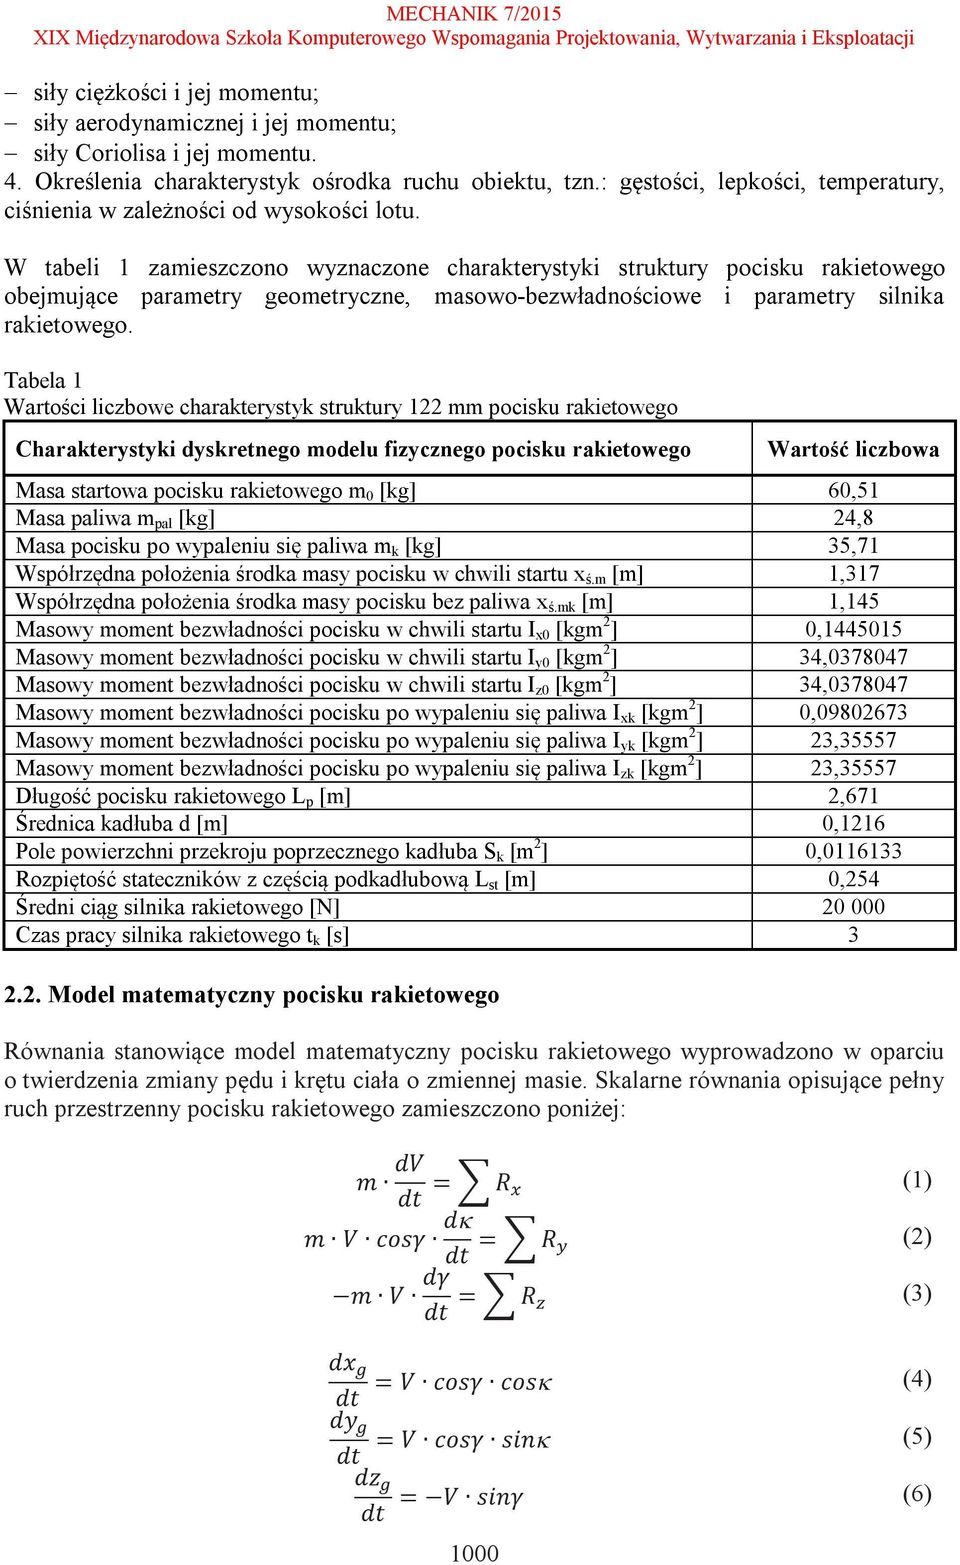 W tabeli 1 zamieszczono wyznaczone charakterystyki struktury pocisku rakietowego obejmujące parametry geometryczne, masowo-bezwładnościowe i parametry silnika rakietowego.